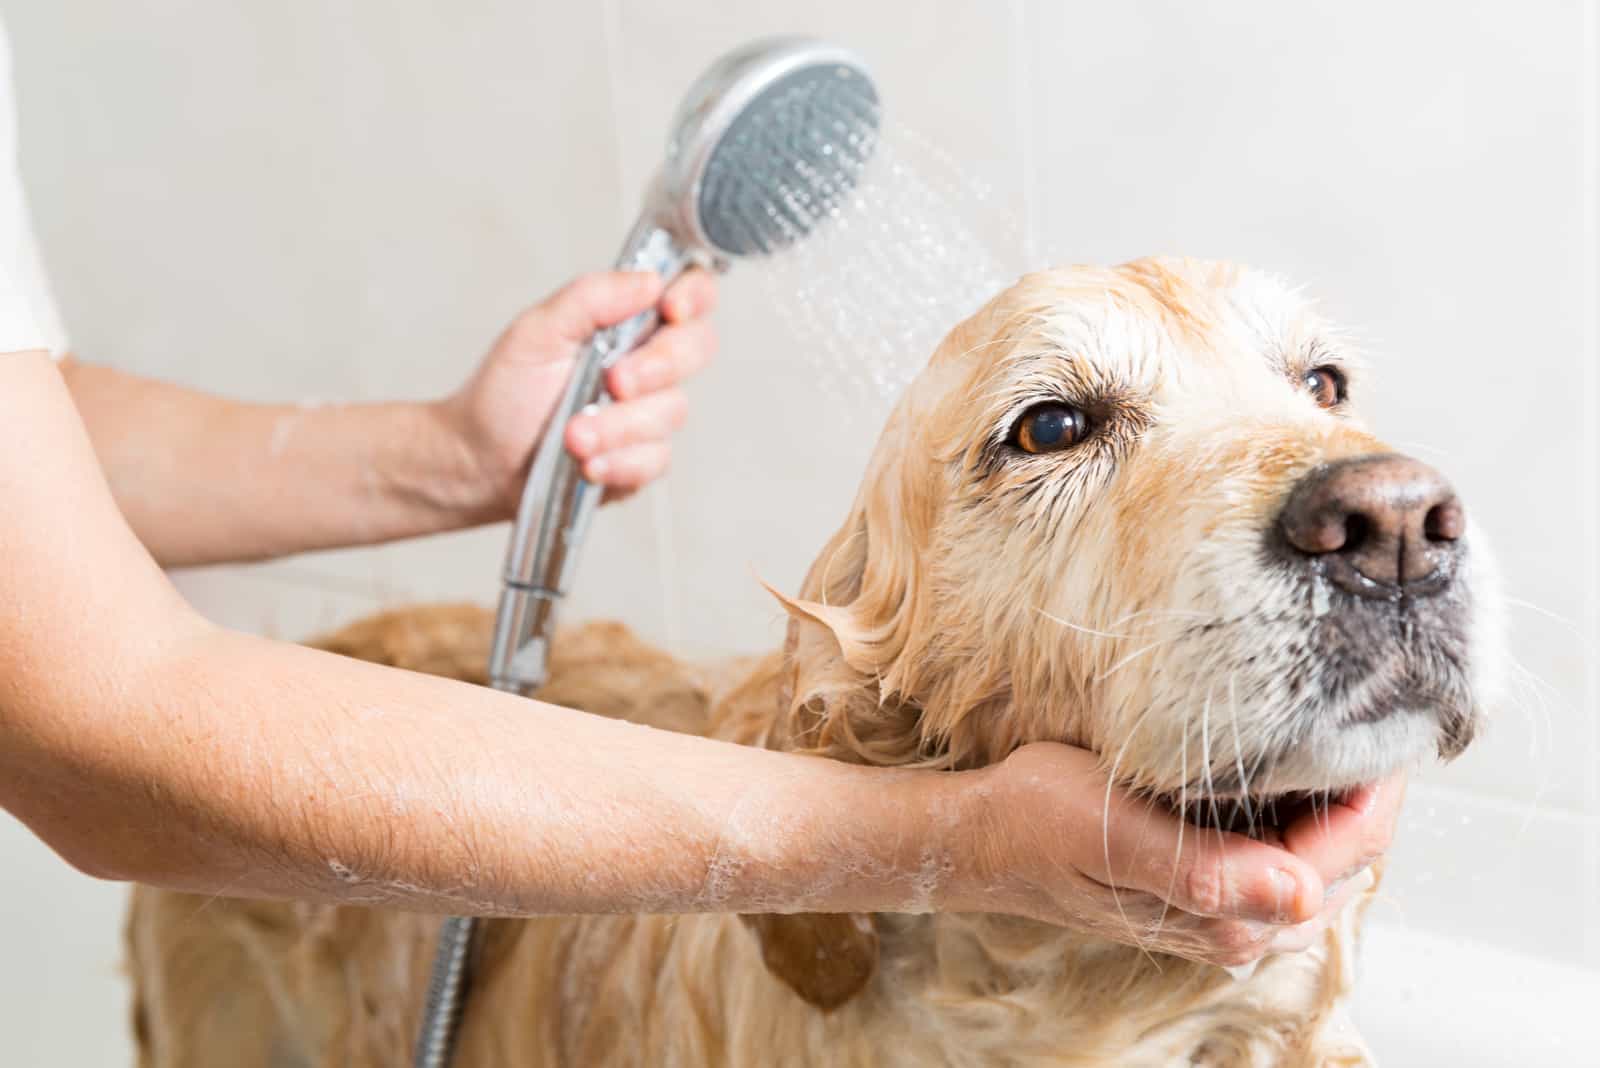 Relaxing bath foam on a Golden Retriever dog